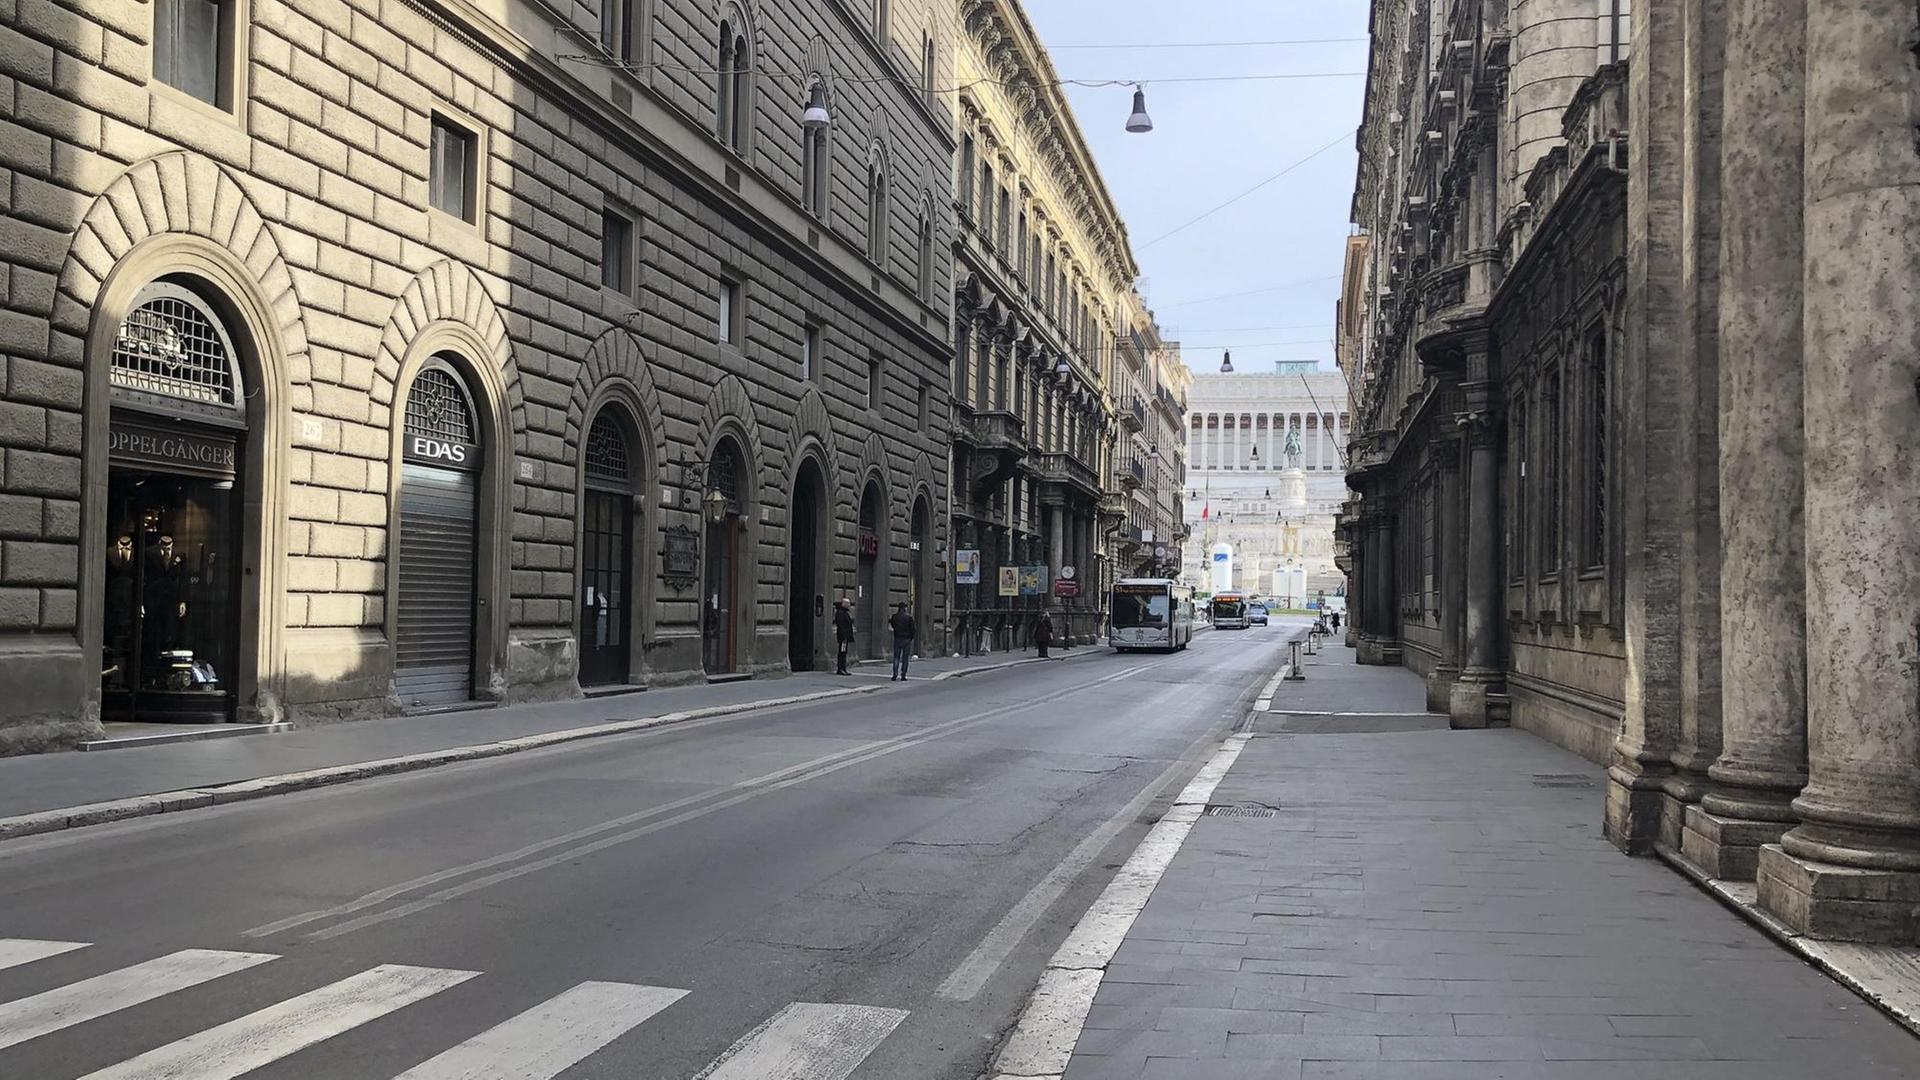 Menschenleerer Straßenzug in der italienischen Hauptstadt Rom: Wegen der Coronakrise ist das öffentliche Leben zum Erliegen gekommen.